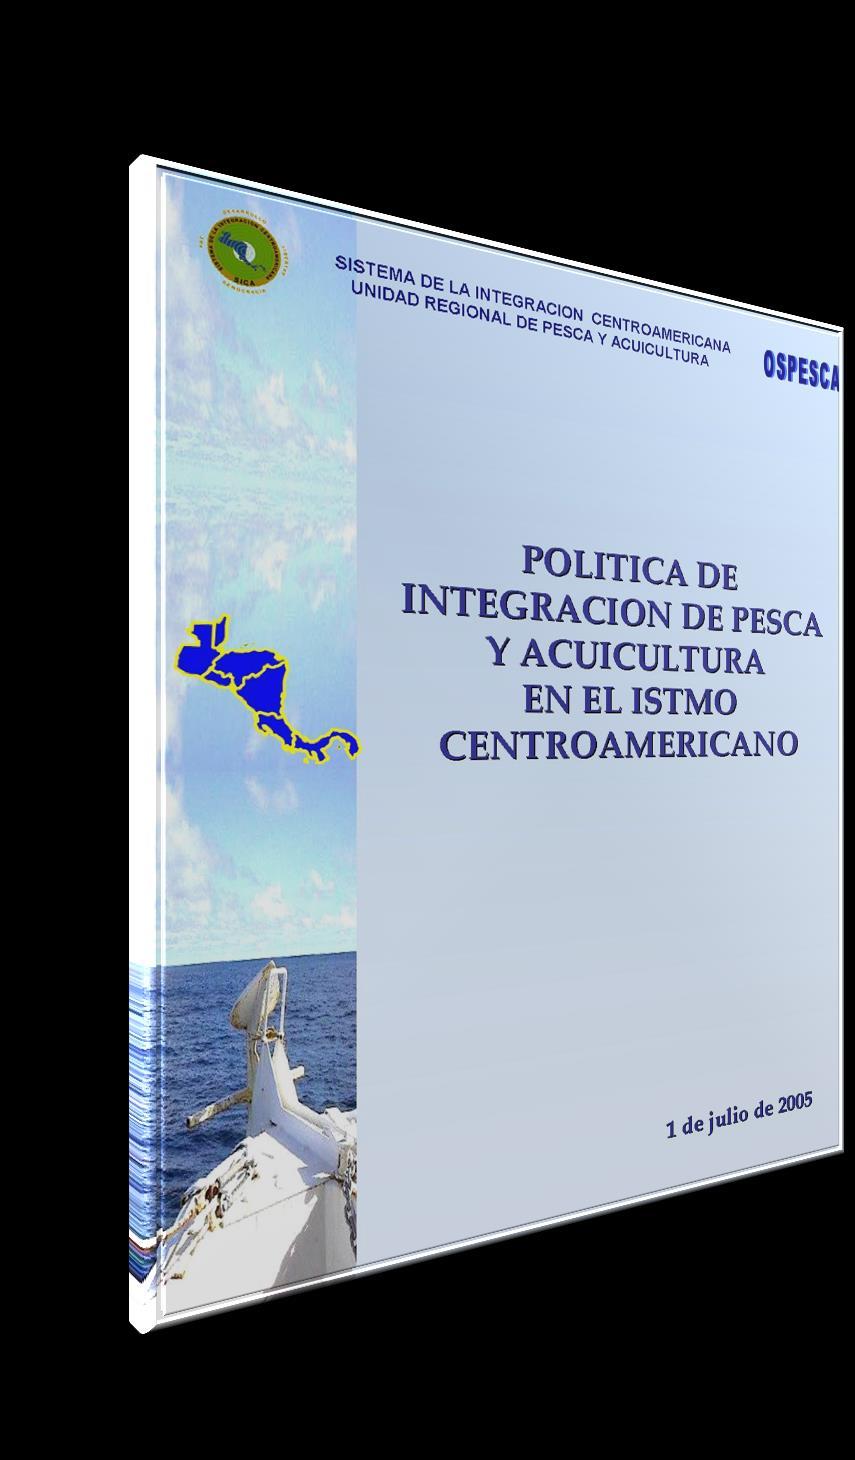 PRIMERA POLITICA SECTORIAL Establecer un sistema regional común para aumentar la participación integrada de los países del Istmo Centroamericano y así